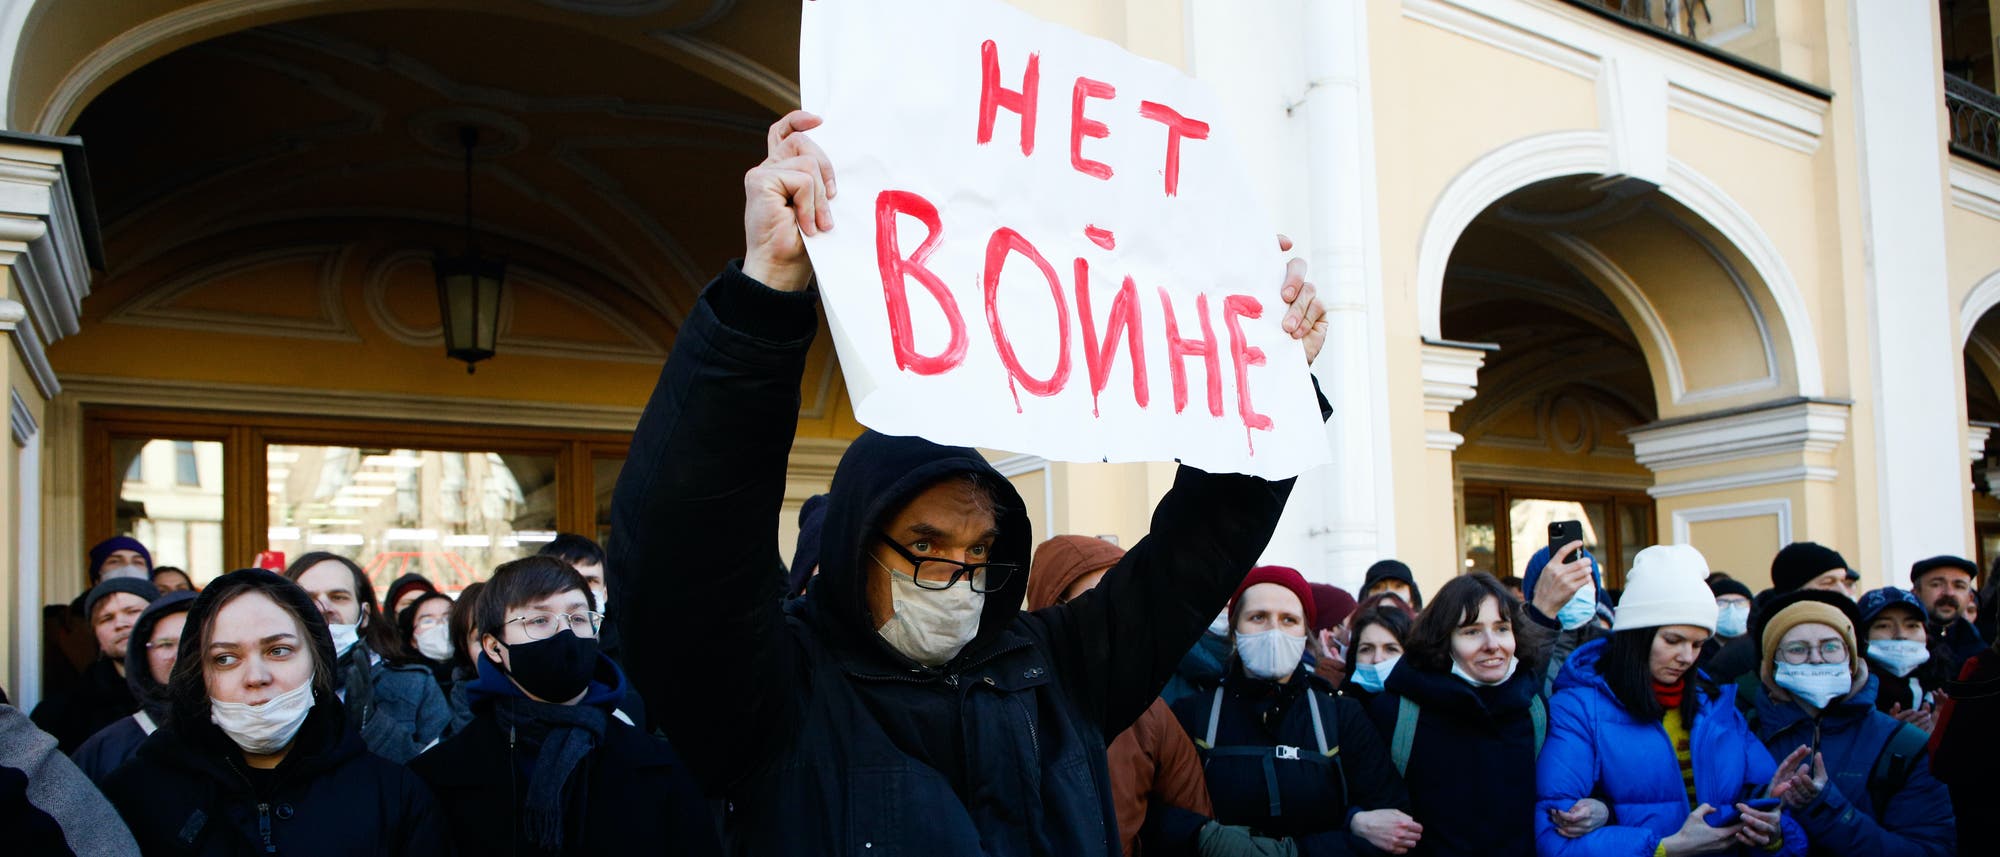 Menschen demonstrierten am 27. Februar 2022 in St. Petersburg gegen Russlands Angriffskrieg gegen die Ukraine. Auf dem Schild steht »Kein Krieg«.